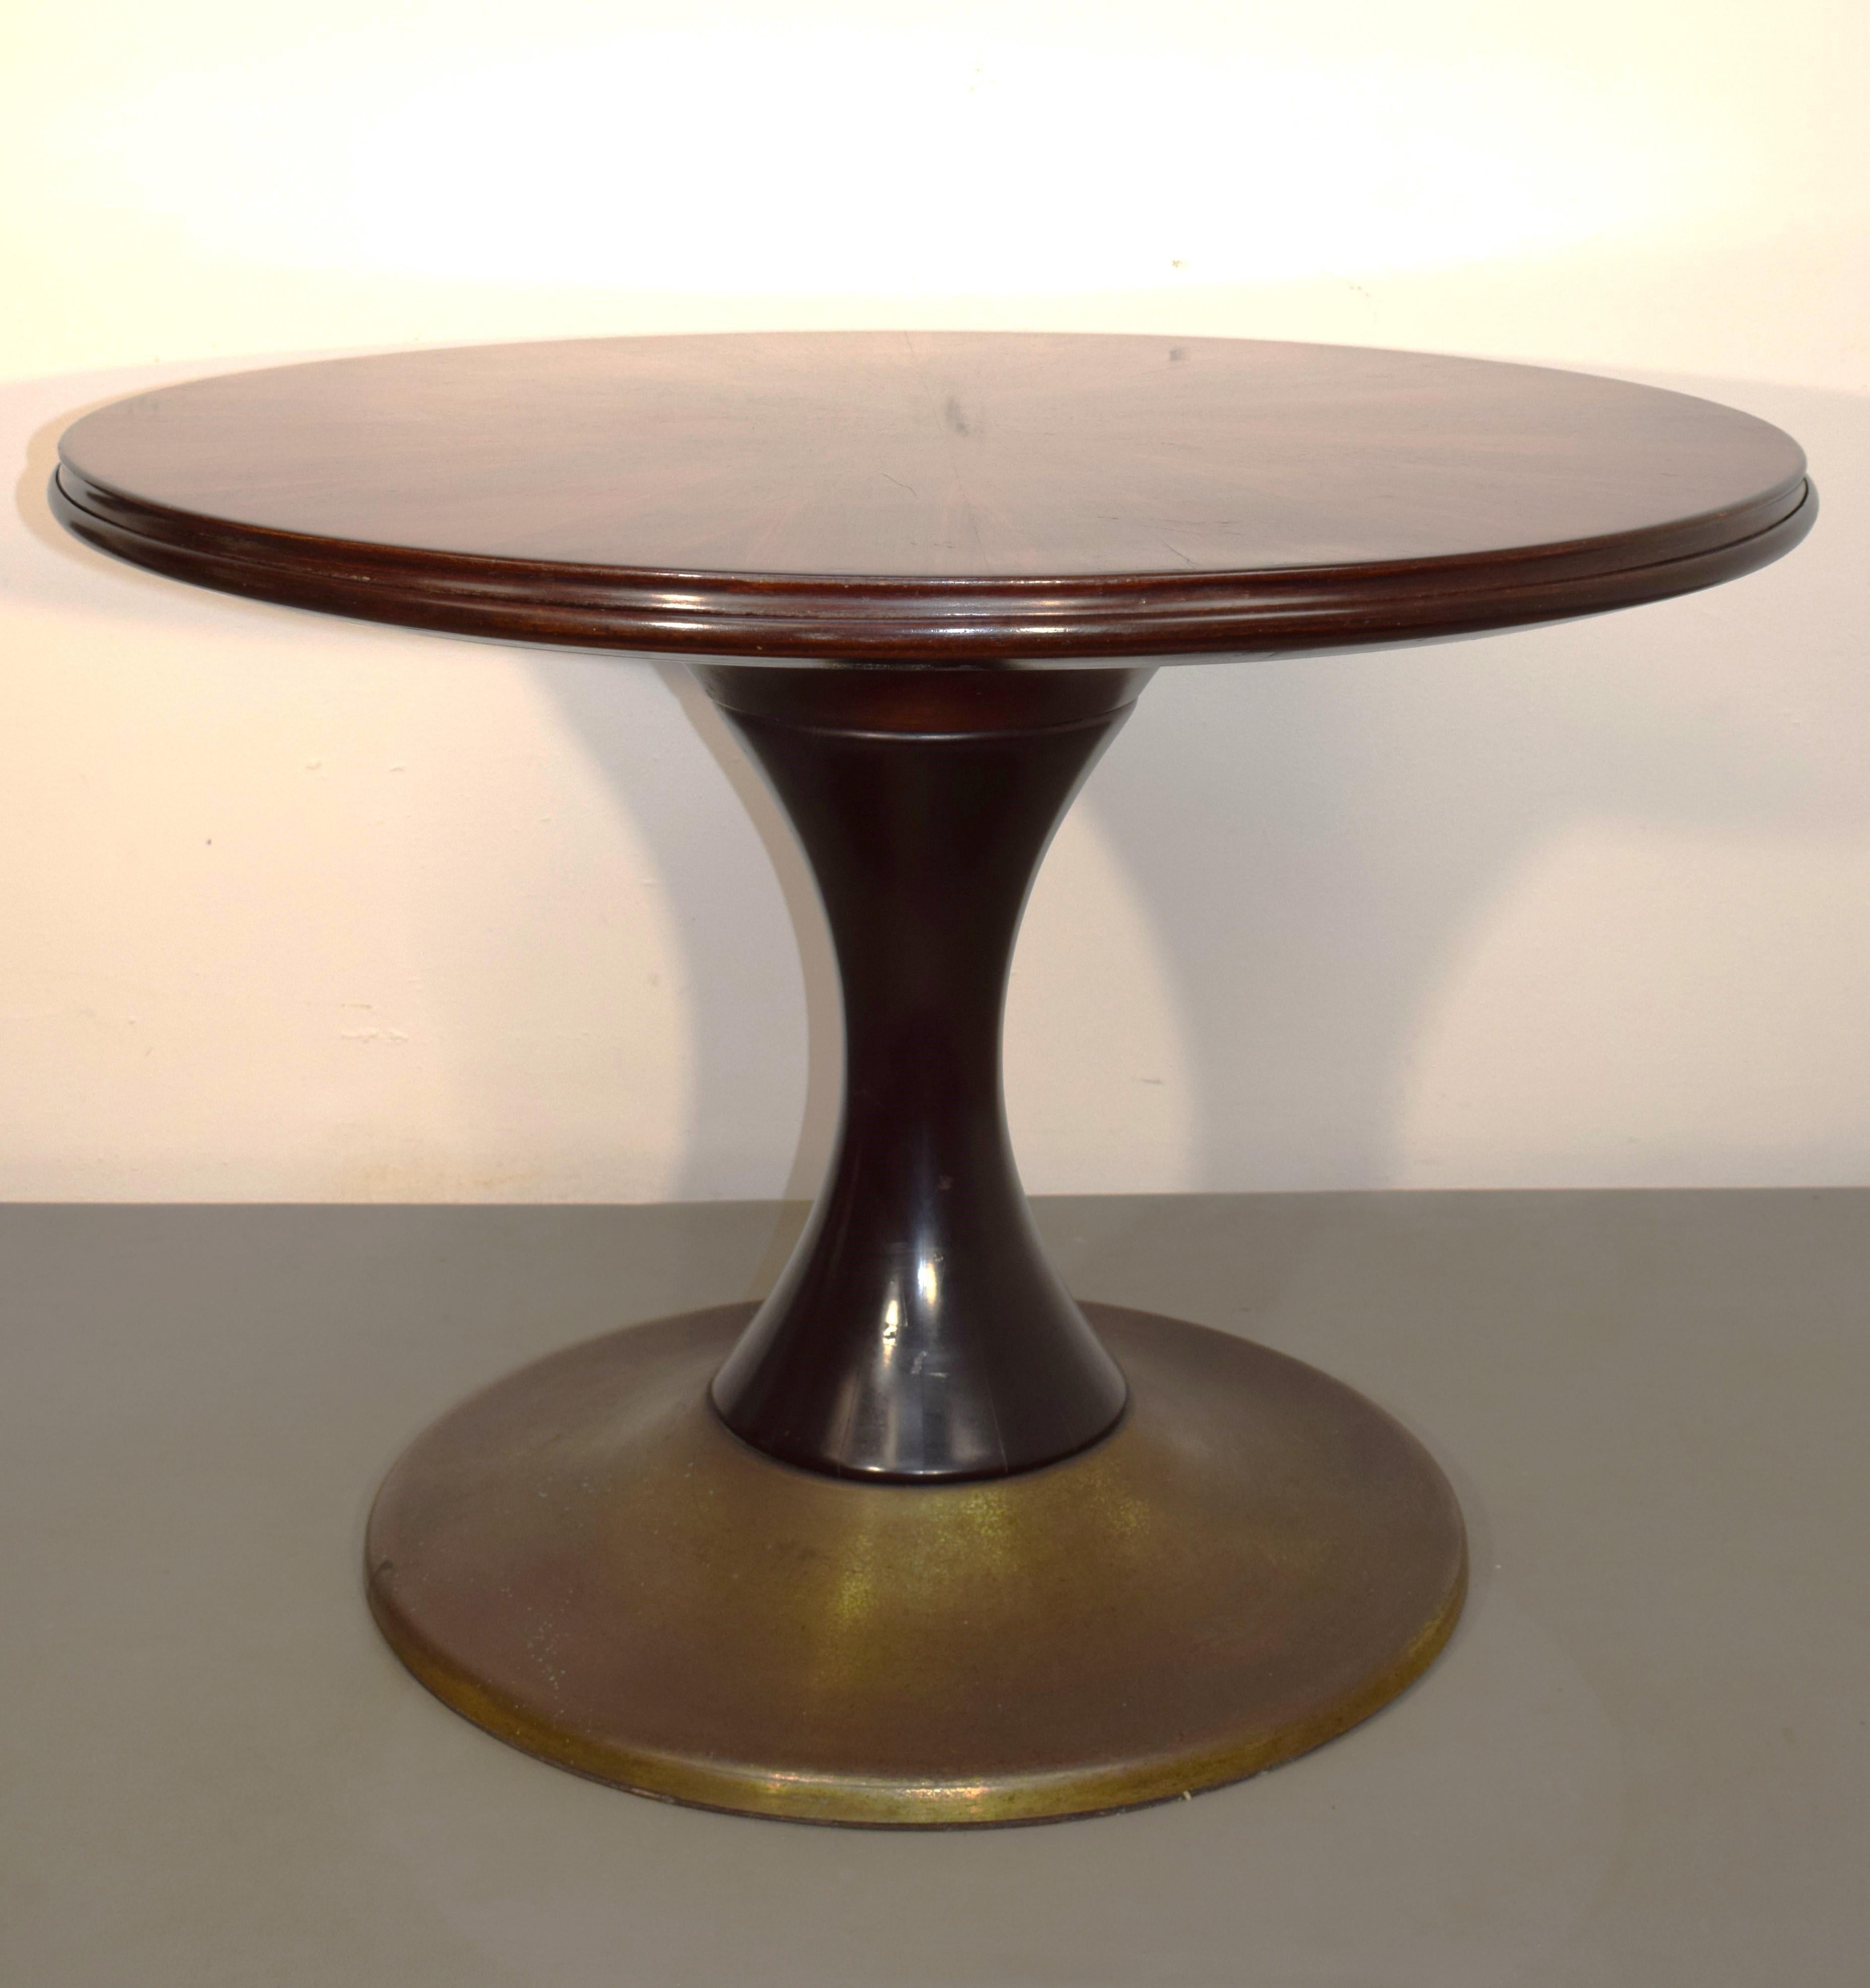 Table ronde italienne, table réversible, années 1960.

Dimensions : H= 70 cm ; P= 101 cm.